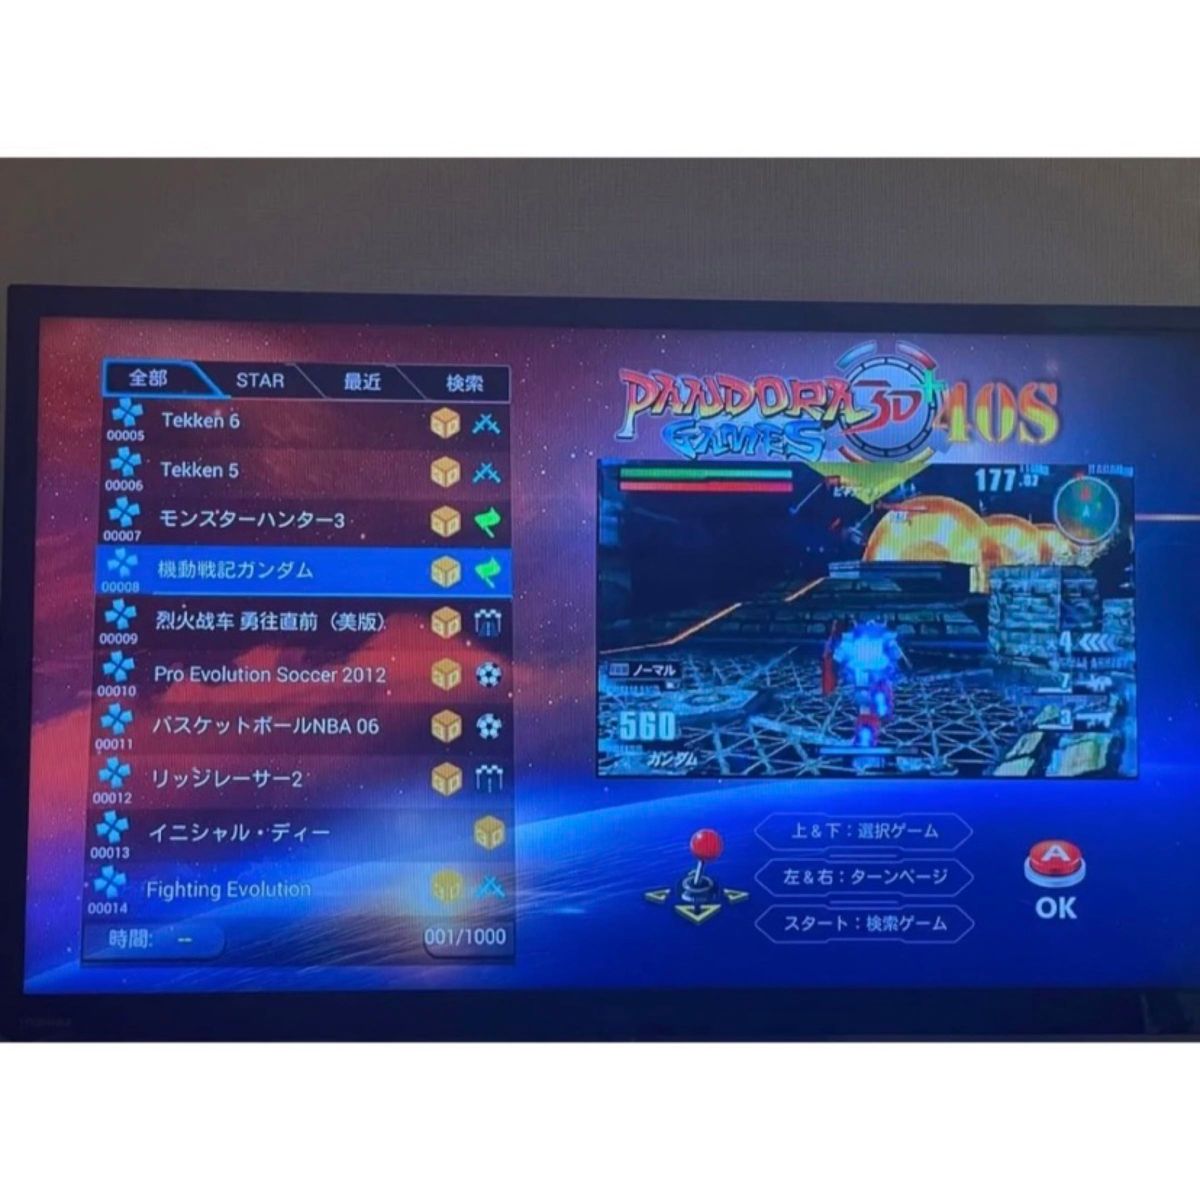 アーケードゲーム classic arcade games station 10000/1 レトロ